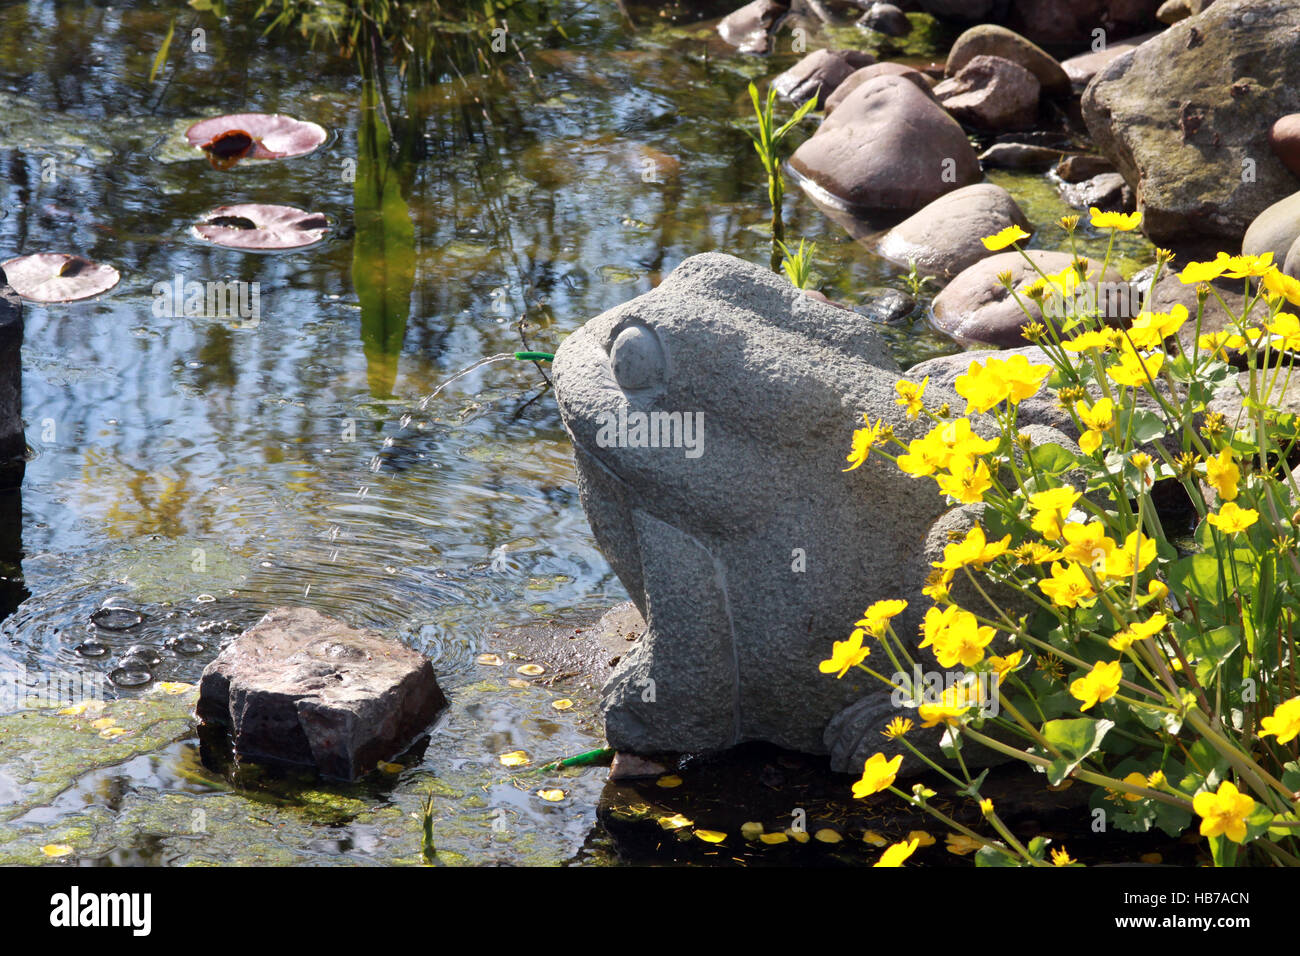 Wasser spucken Frosch im Gartenteich Stockfotografie - Alamy